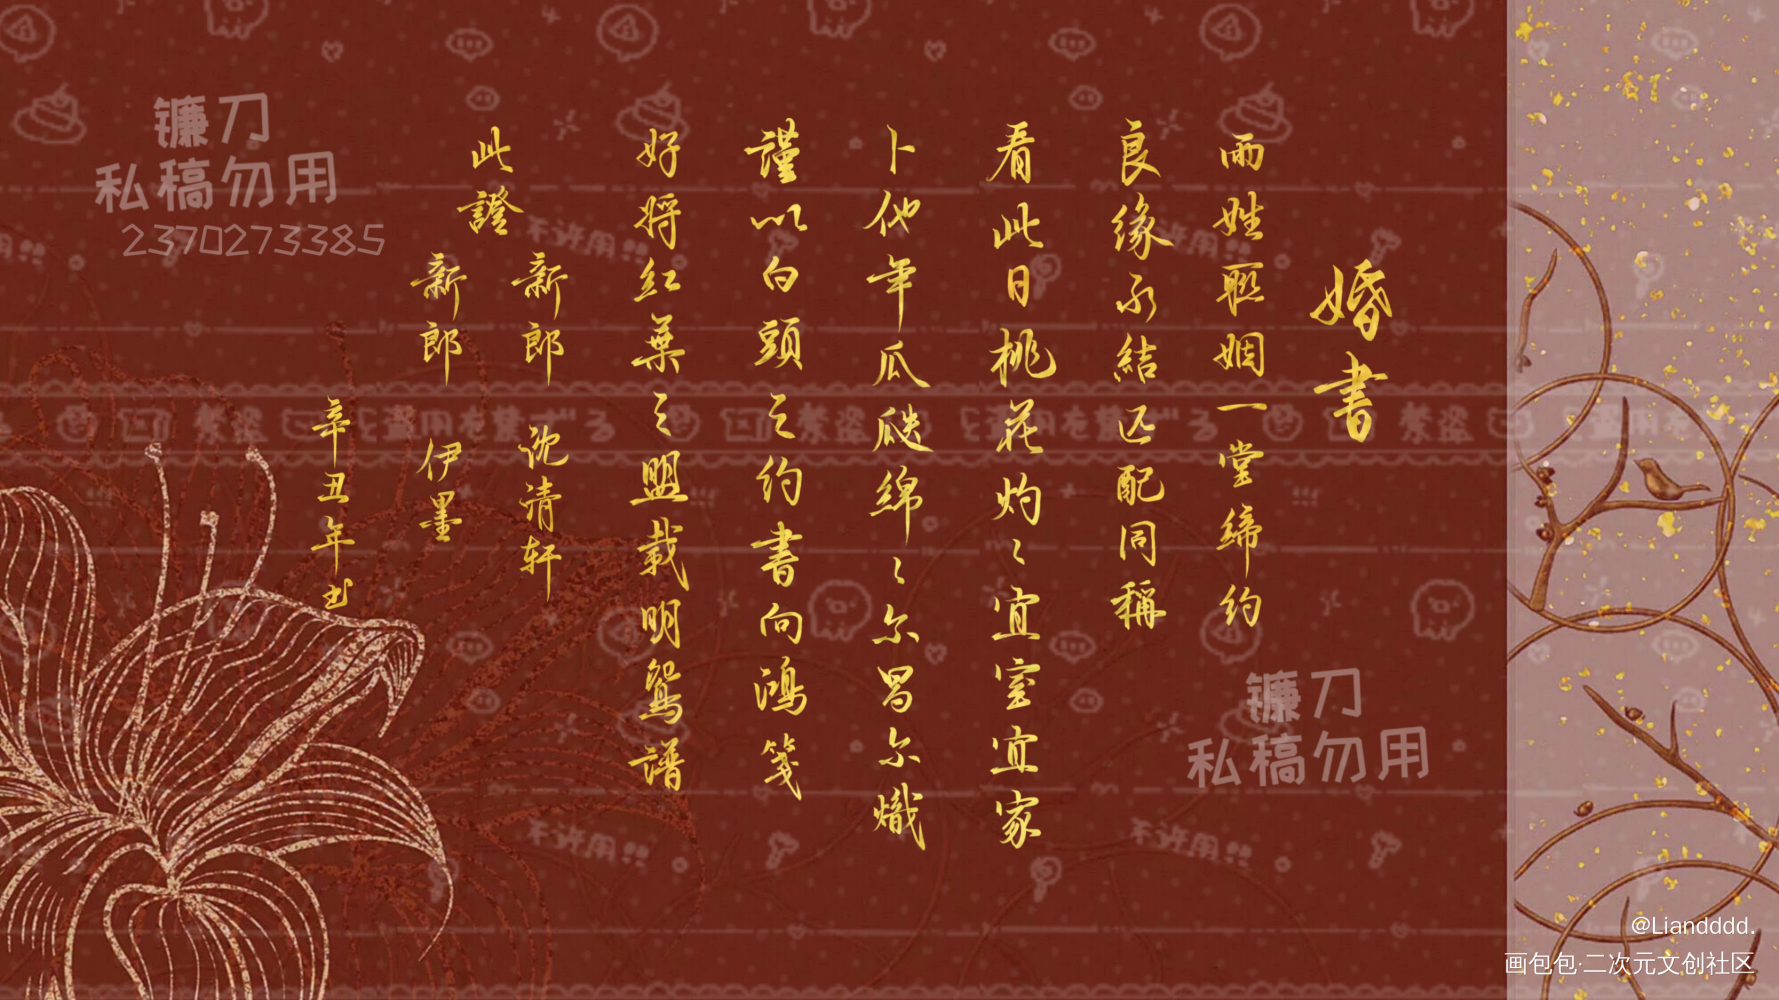 中式婚礼文案古风图片